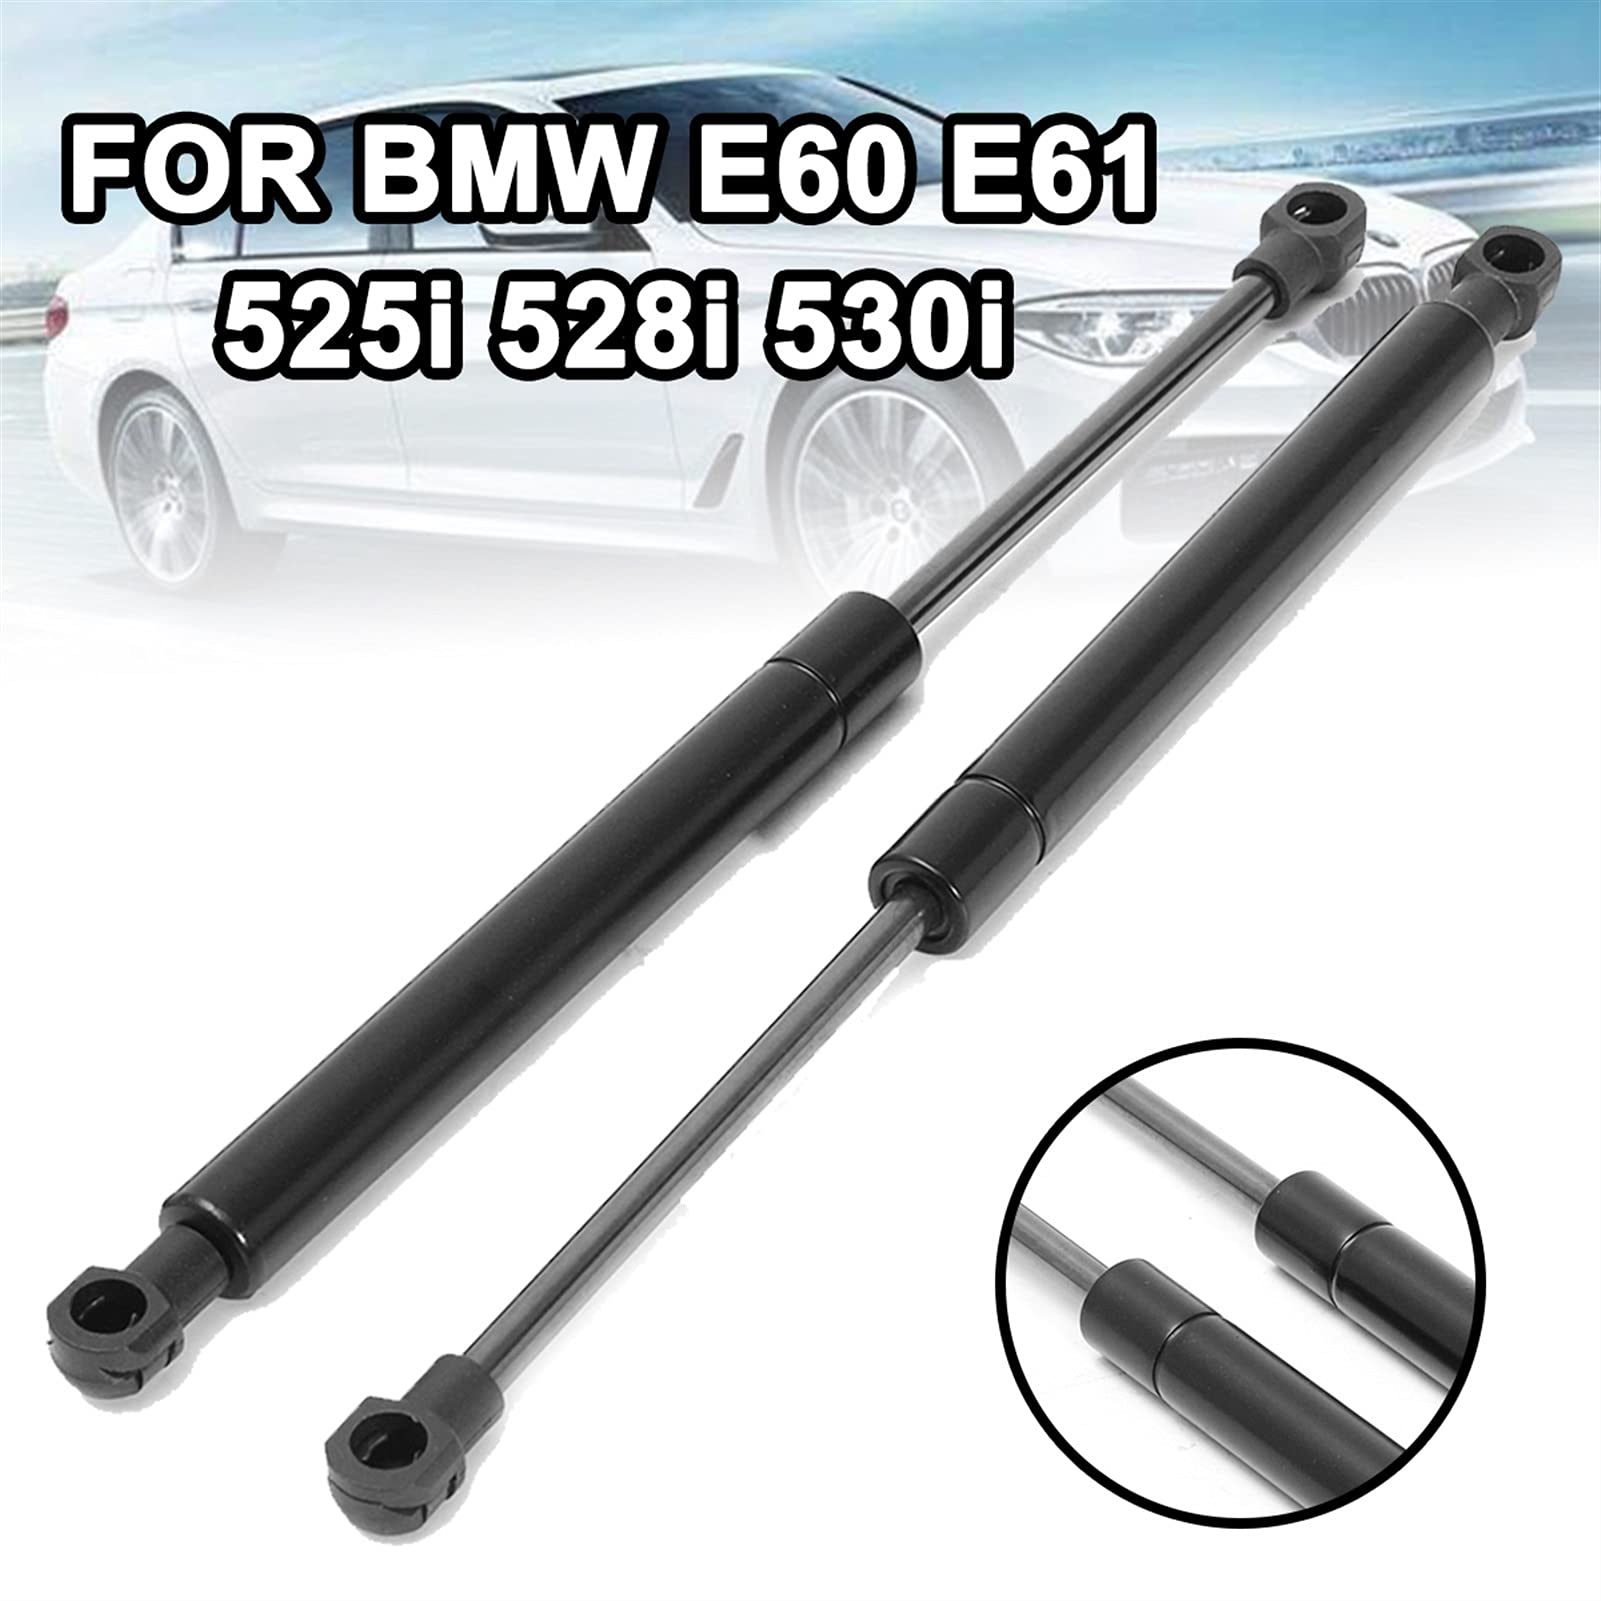 Car Rear Damper For BMW E60 E61 525i 528i 530i 2pcs Durable Car Front Hood Gas Shock Strut Damper Parker Accessories